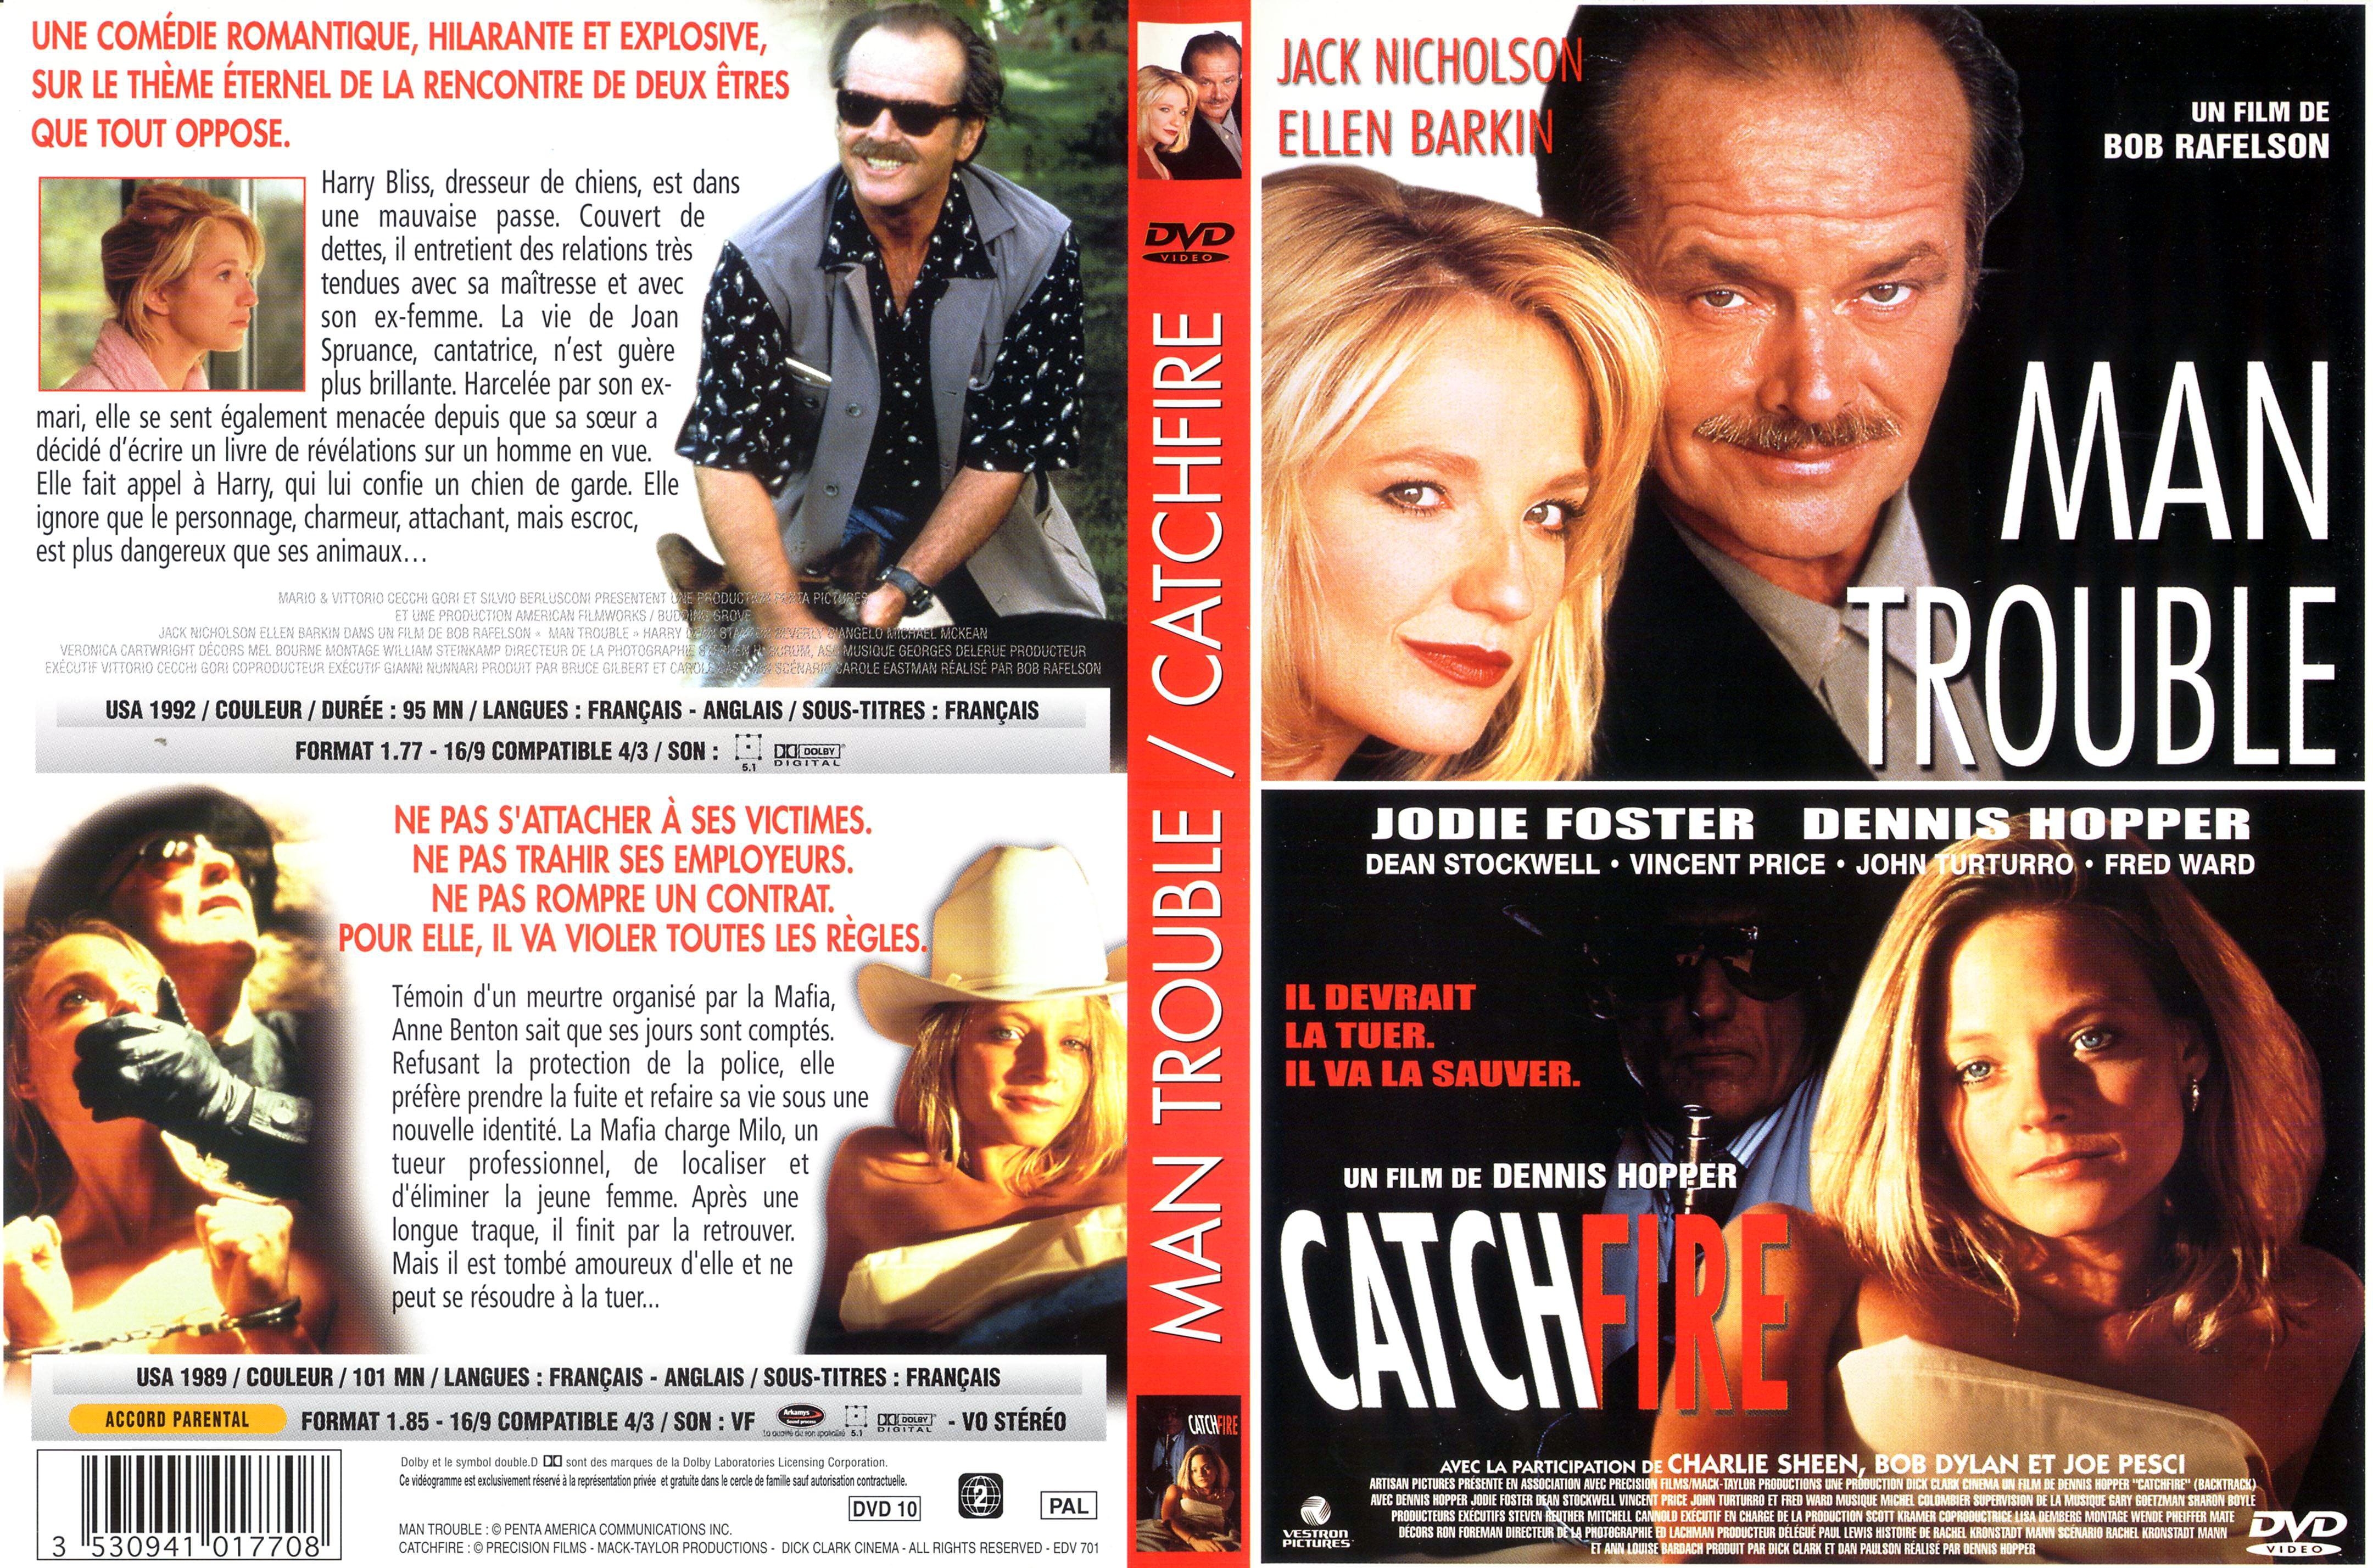 Jaquette DVD Man trouble + Catchfire